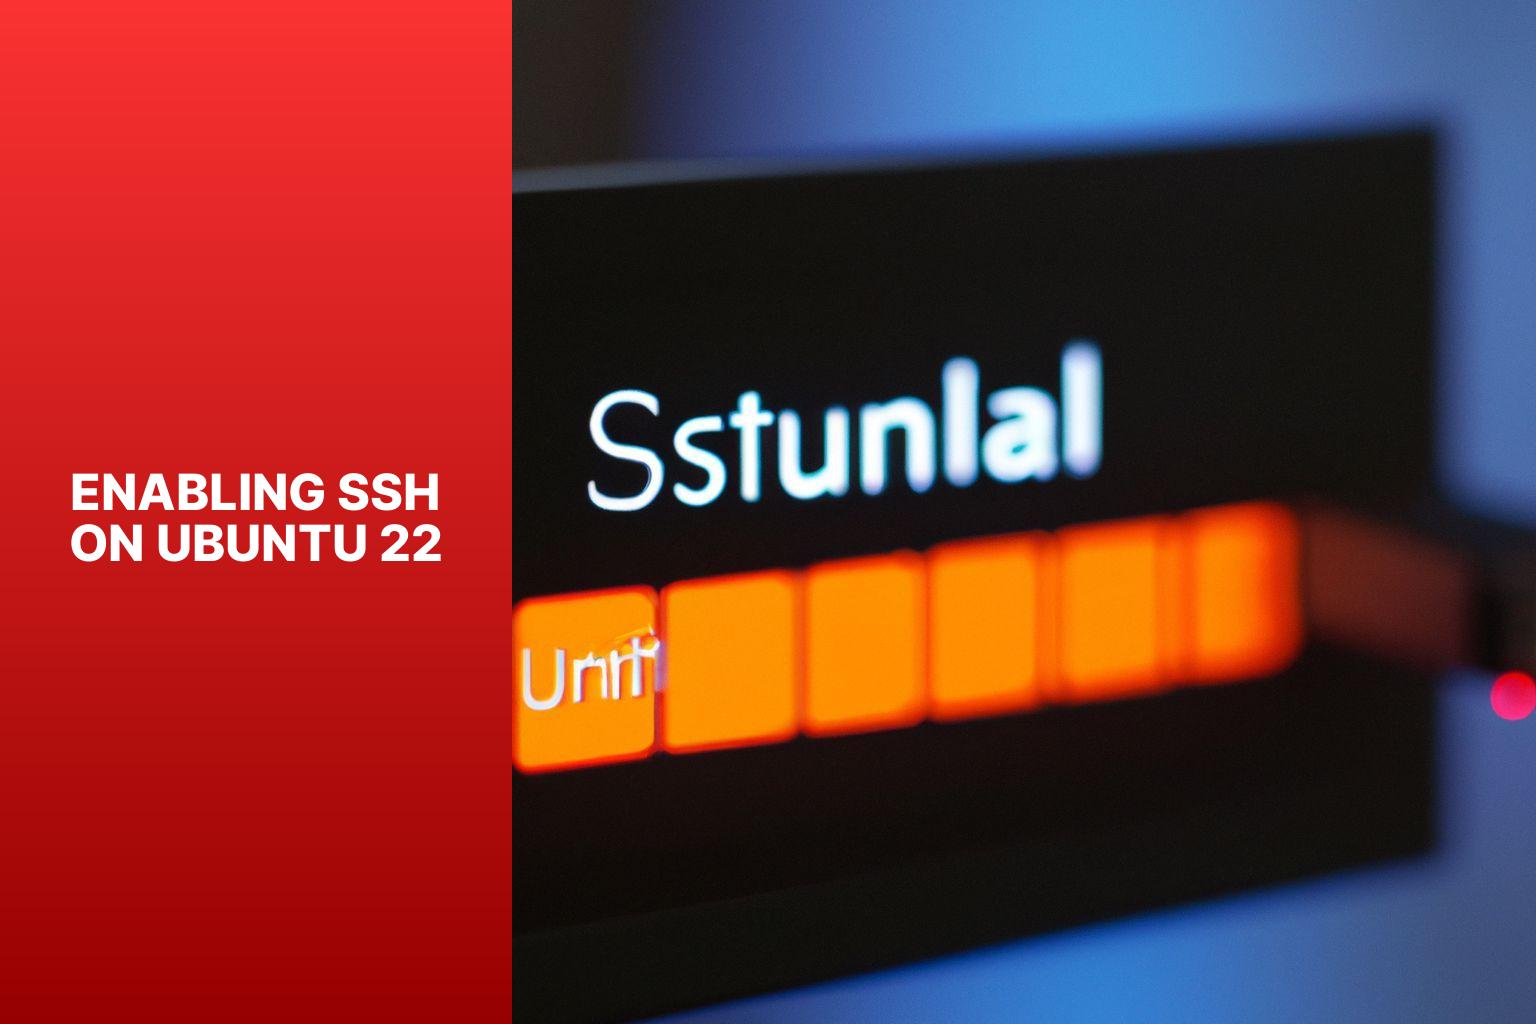 Enabling SSH on Ubuntu 22 - how to enable ssh on ubuntu 22 